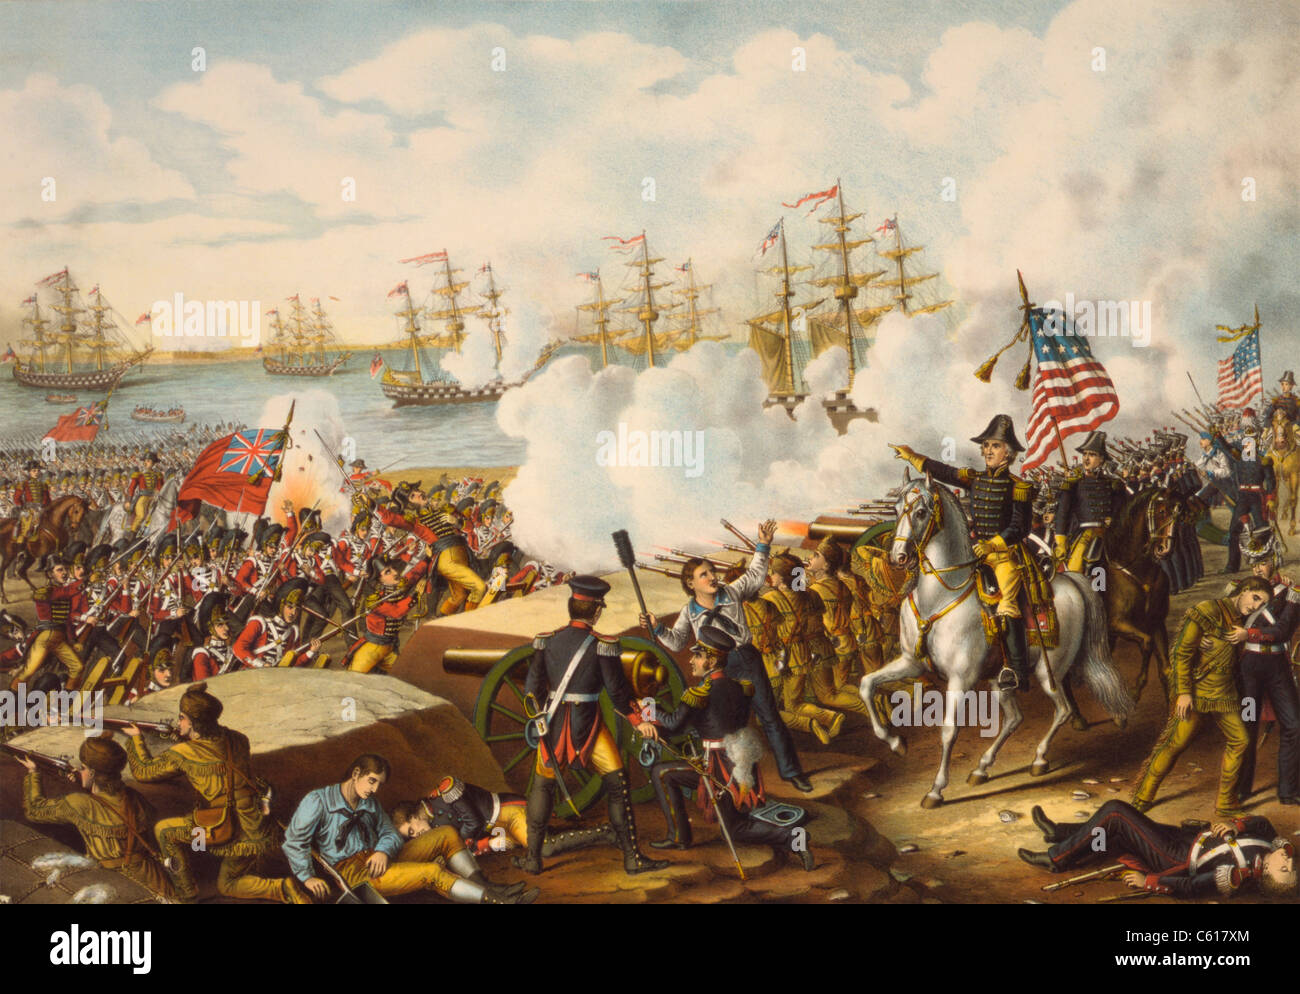 La batalla de Nueva Orleans, 8 de enero de 1815. La batalla final de la guerra de 1812, resultando en la victoria de las fuerzas americanas contra los británicos. Foto de stock